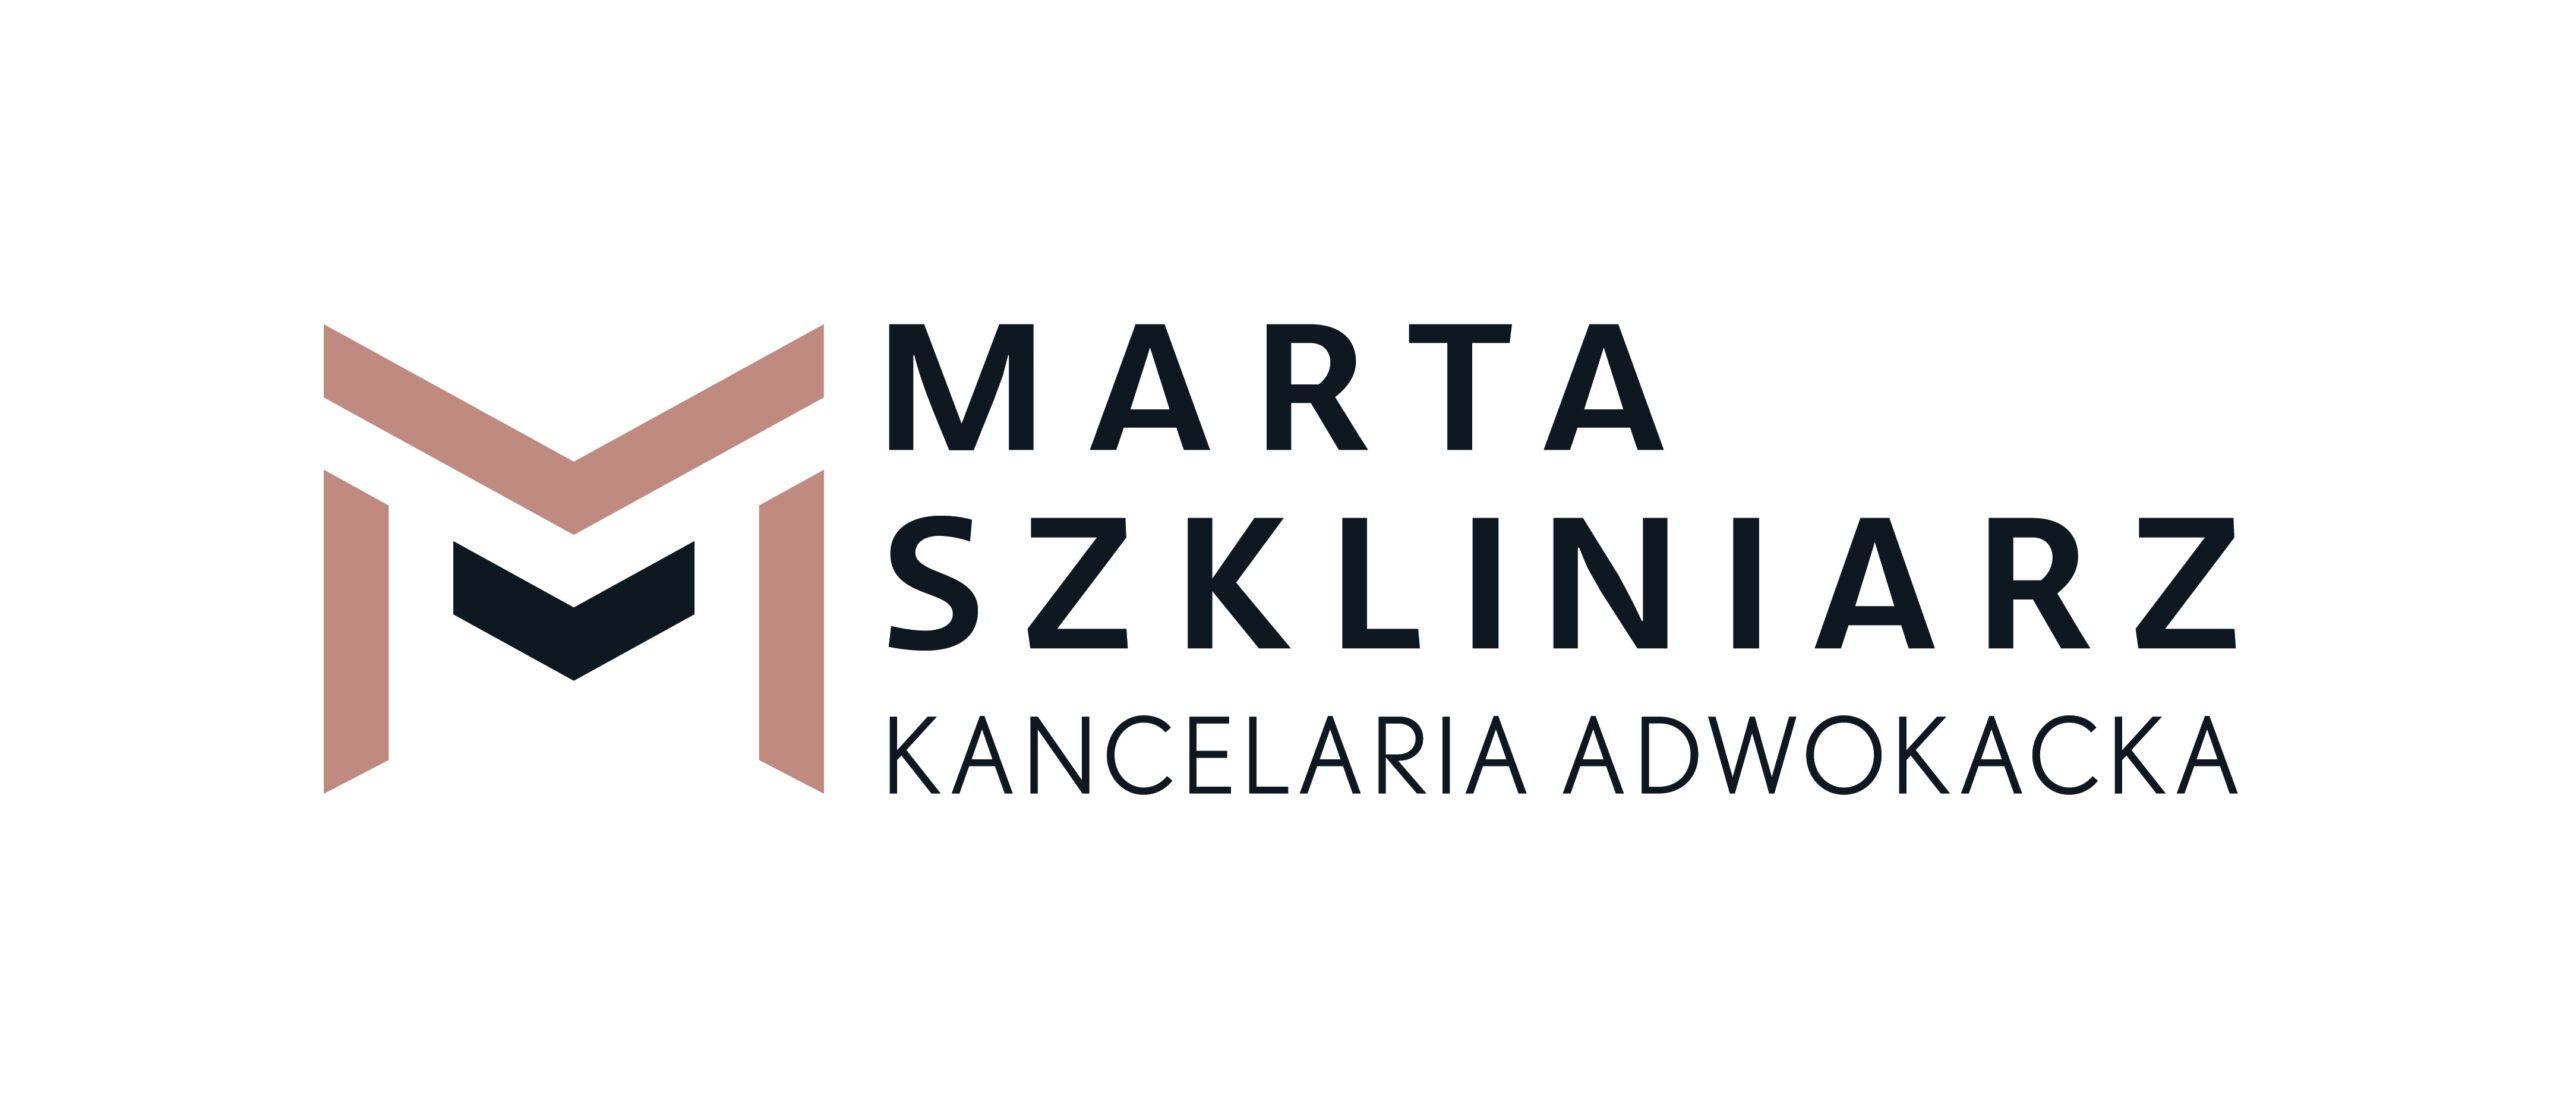 Adwokat Marta Szkliniarz 